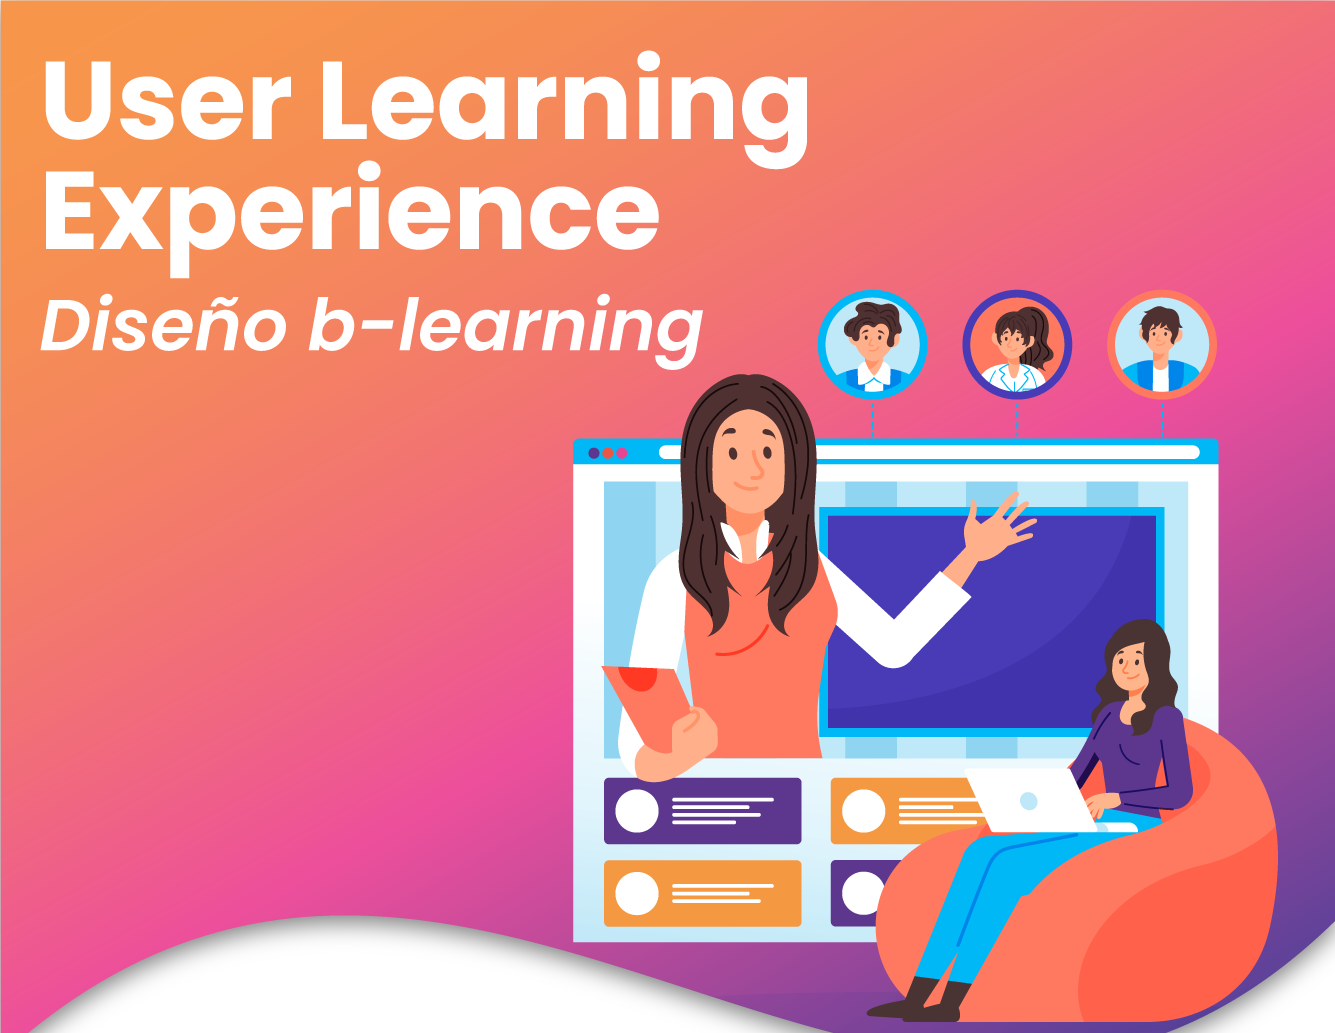 Diseño de experiencias b-learning